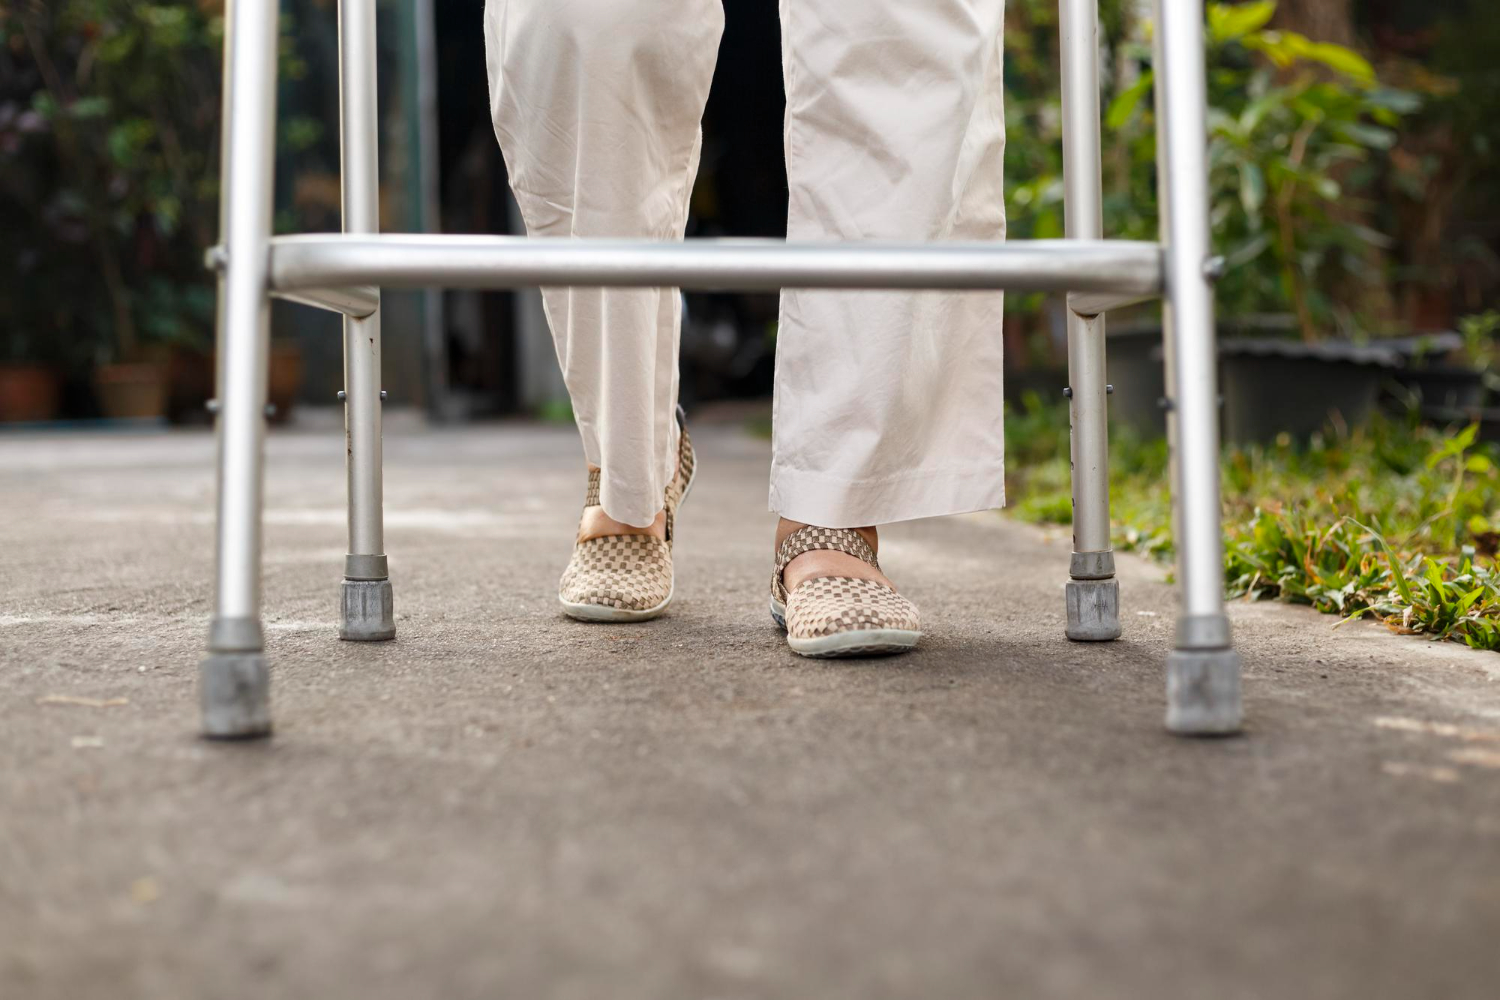 Quel matériel pour aider une personne à mobilité réduite à marcher ?